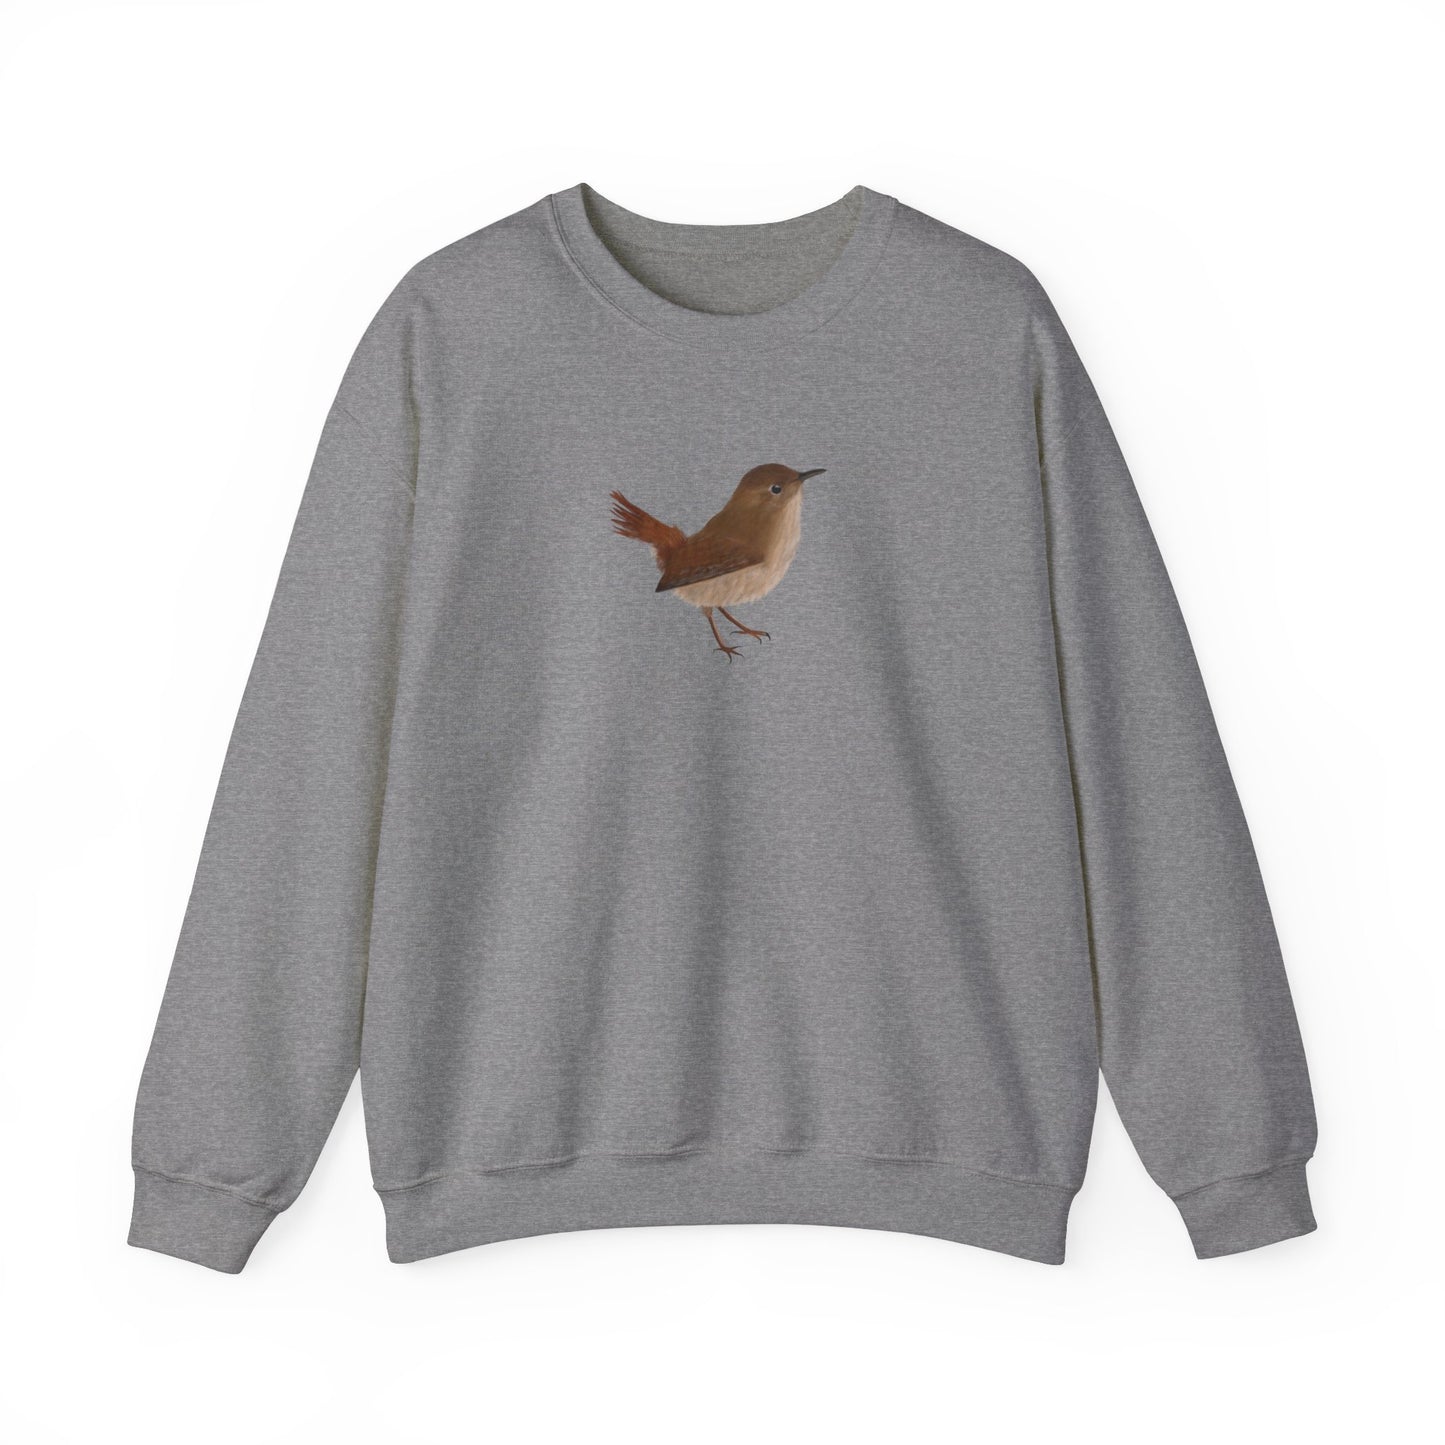 Wren Bird Watcher Biologist Crewneck Sweatshirt